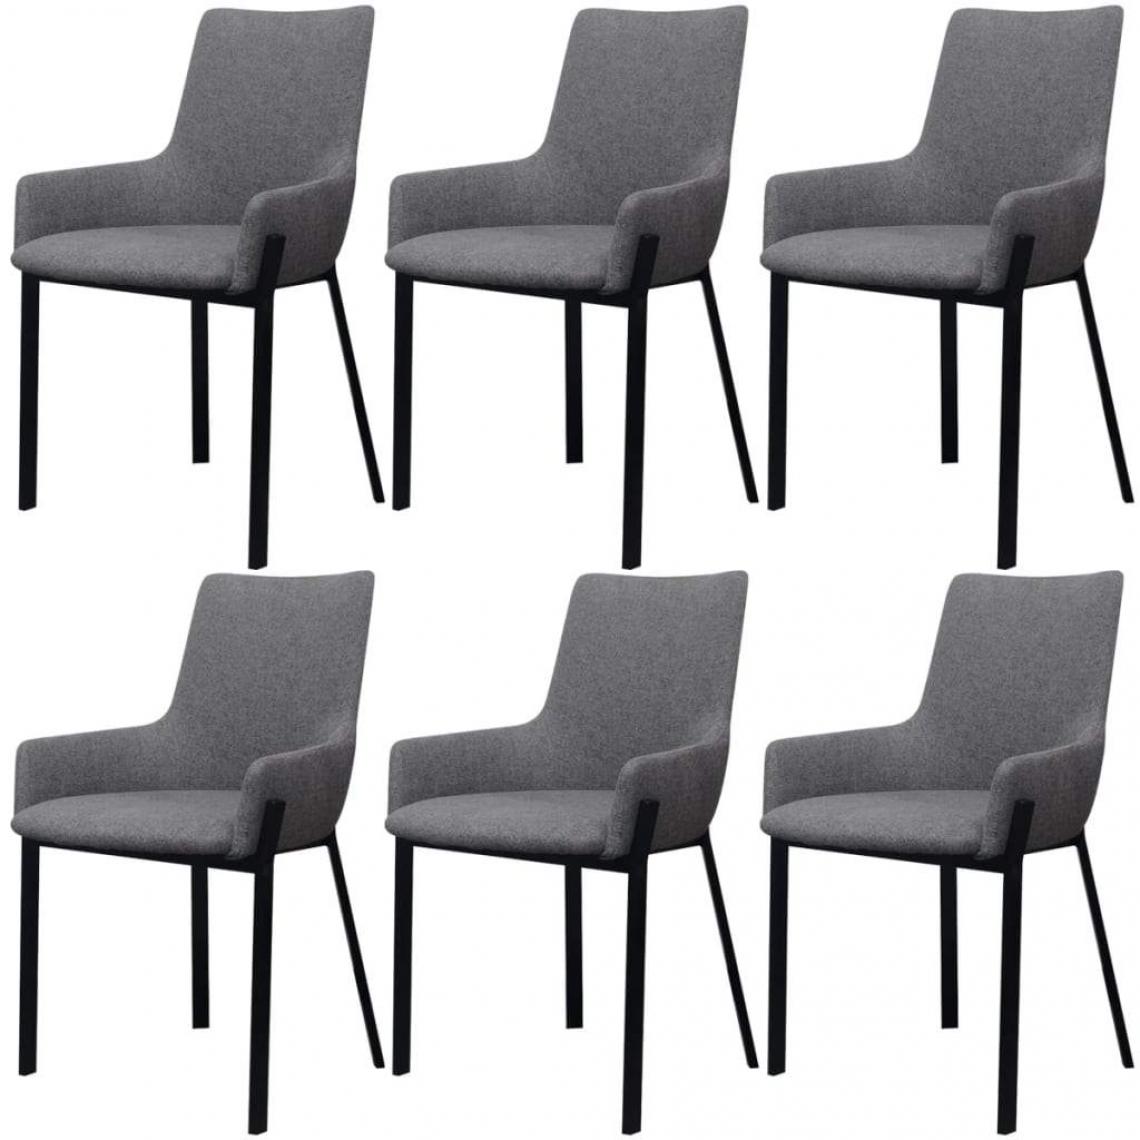 Decoshop26 - Lot de 6 chaises de salle à manger cuisine design moderne tissu gris clair CDS022403 - Chaises